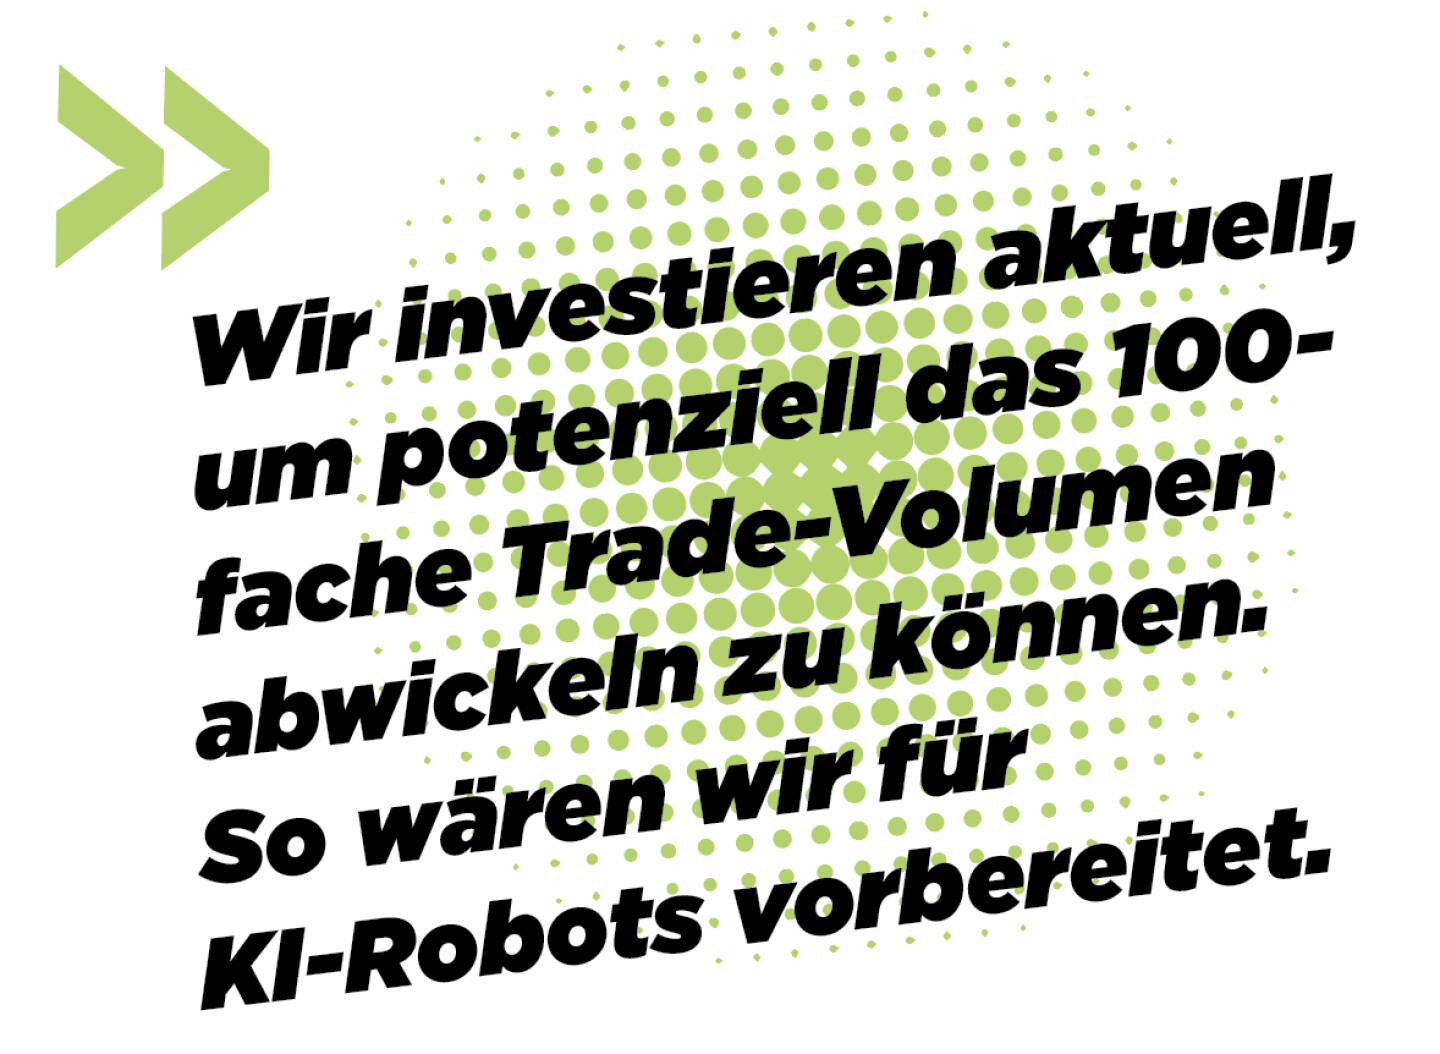 Wir investieren aktuell, um potenziell das 100-fache Trade-Volumen abwickeln zu können. So wären wir für KI-Robots vorbereitet.
Andreas Kern